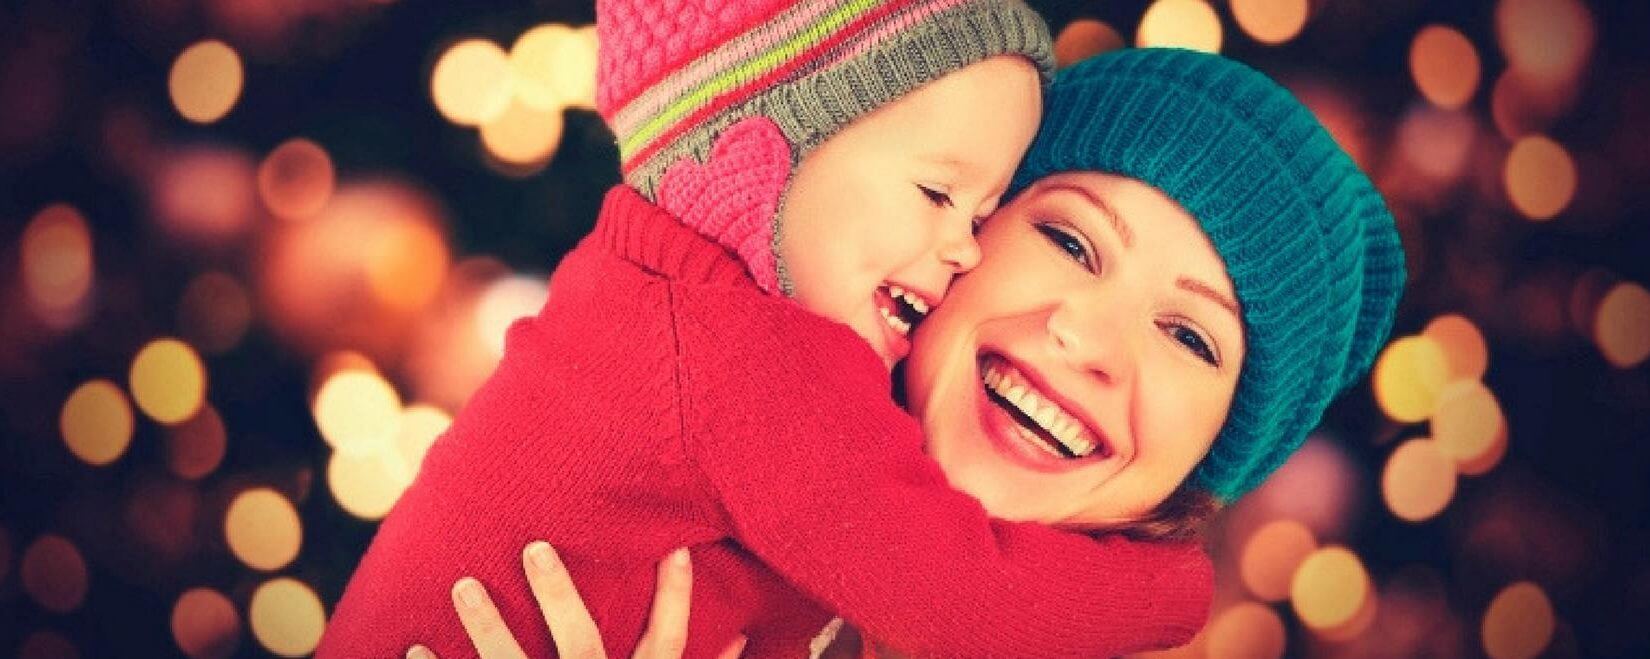 Χριστούγεννα: 5 Tips για να περάσετε με τα παιδιά σας όμορφα